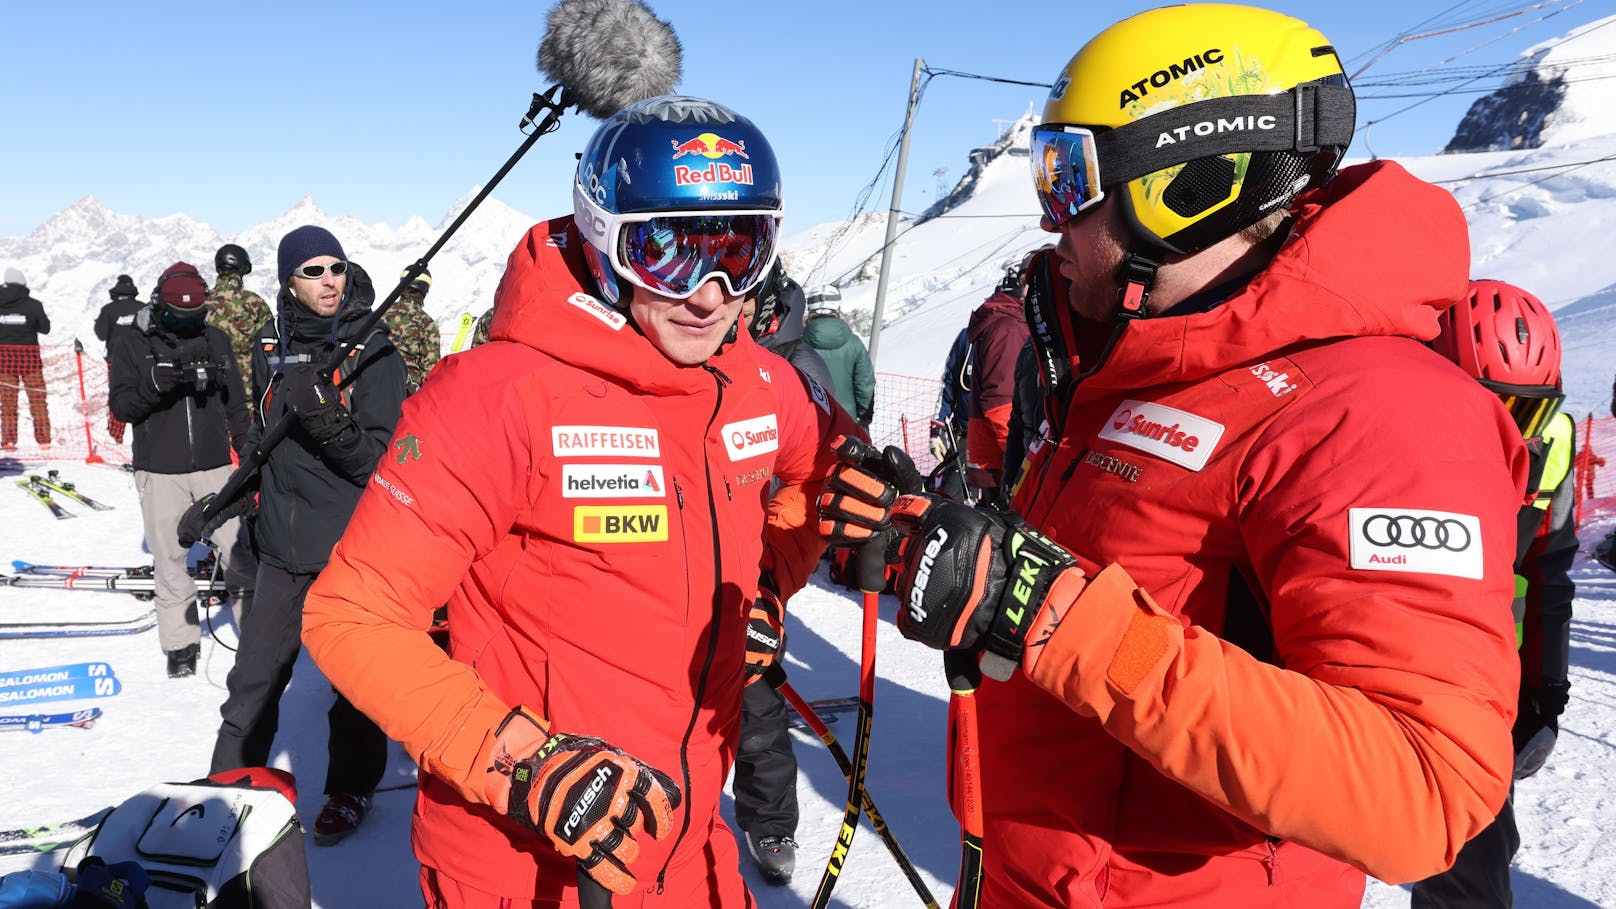 Sorge um Ski-Superstar Odermatt vor US-Rennen